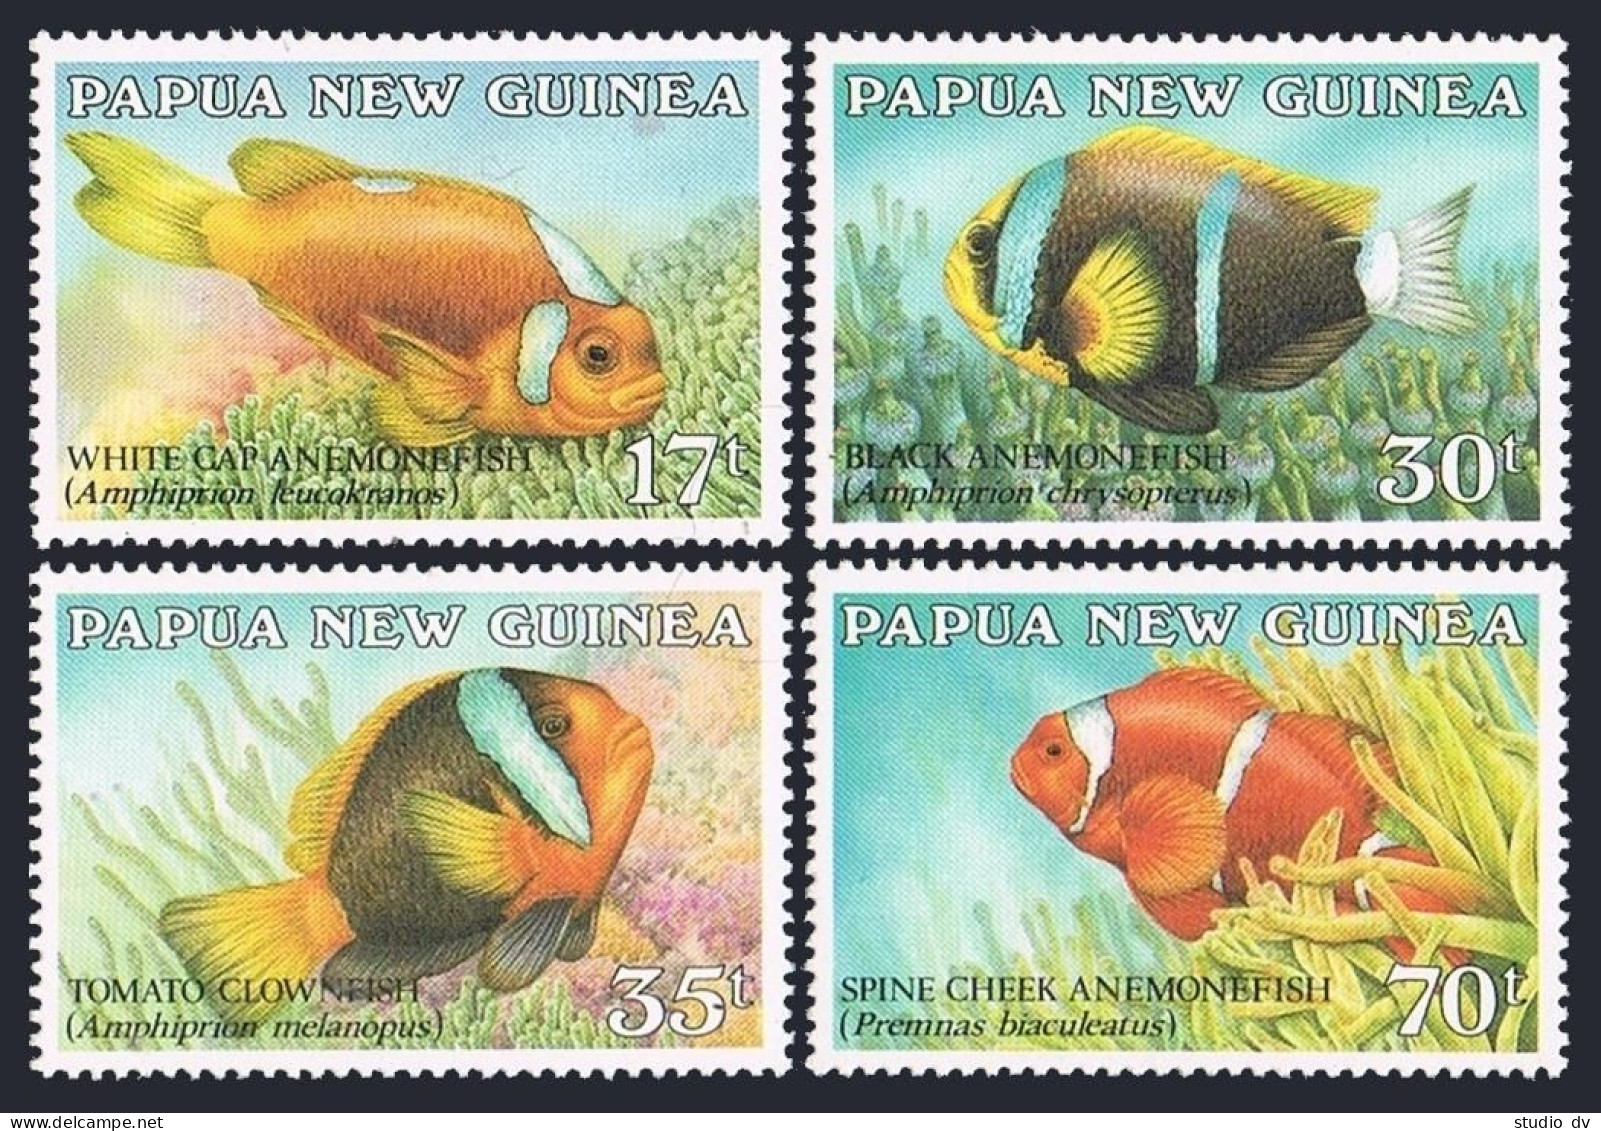 Papua New Guinea 659-662, MNH. Michel 539-542. Fish 1987. - Papouasie-Nouvelle-Guinée